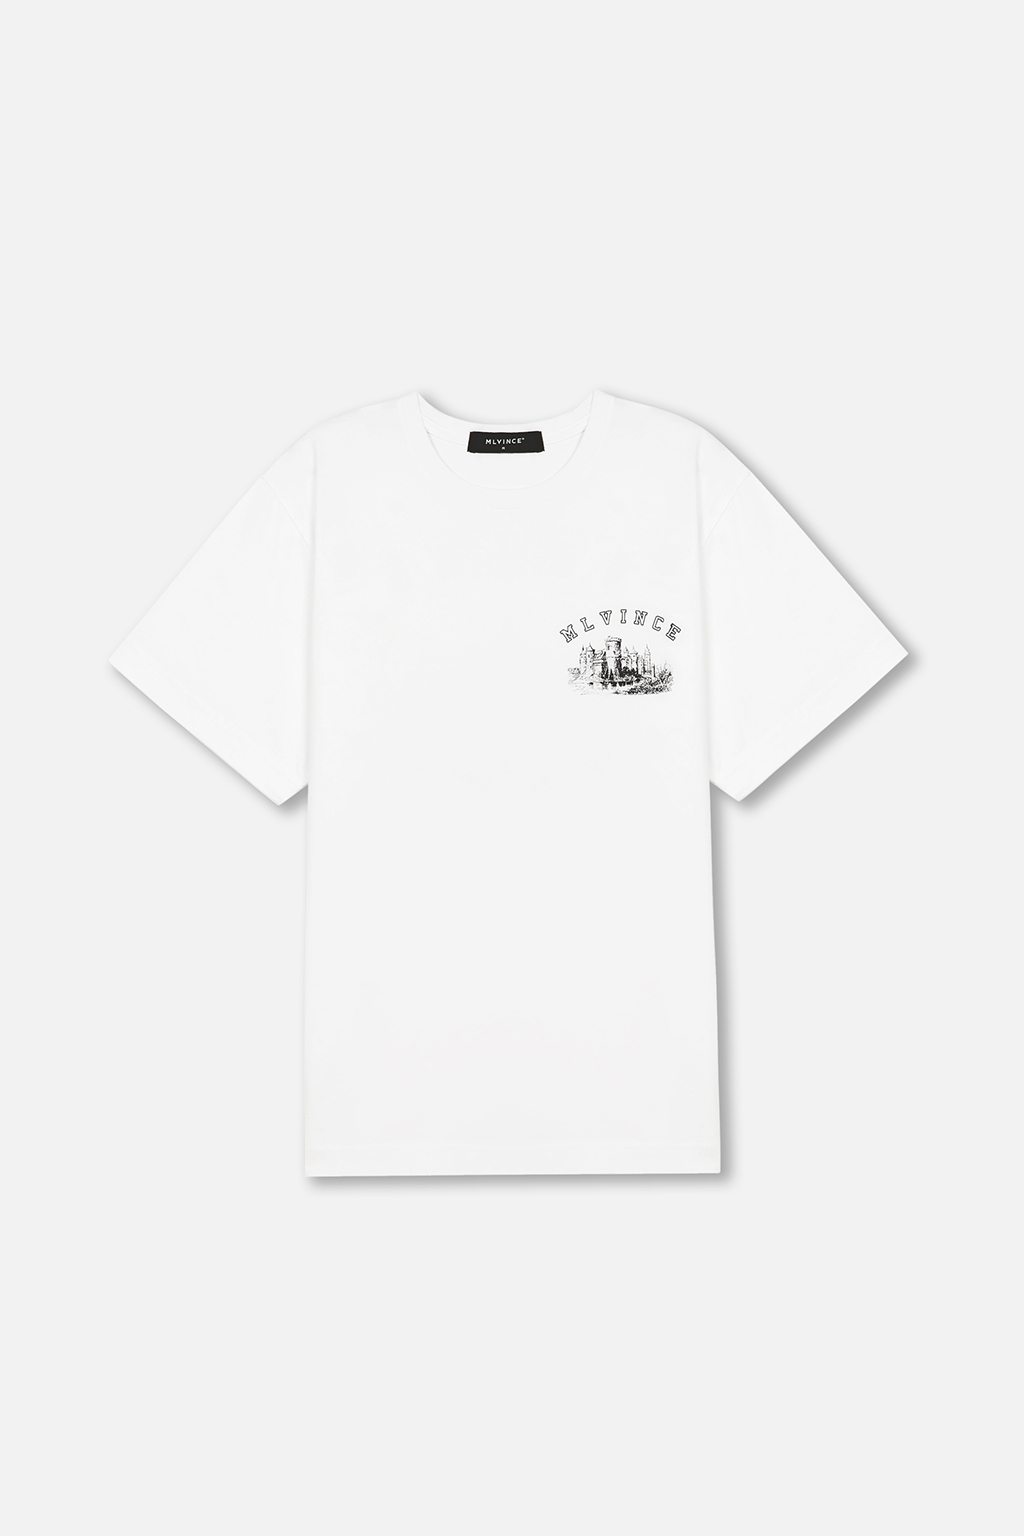 ライセンス販売 メルヴィンス ARCHITECTURE S/S TEE WHITE Tシャツ